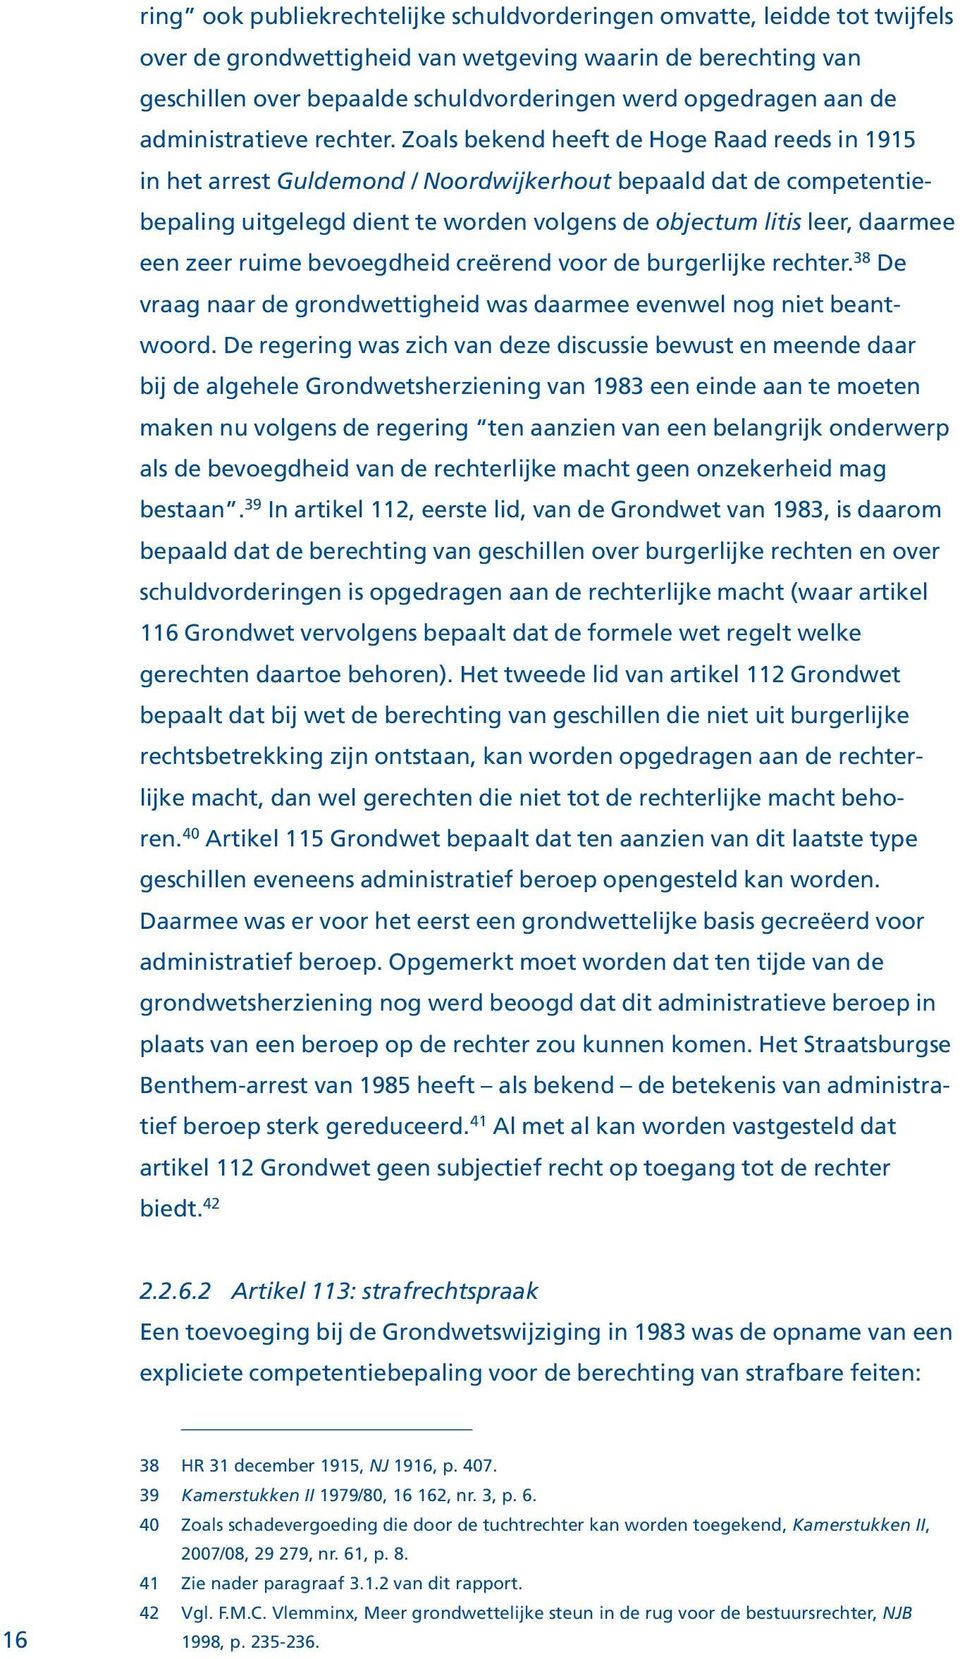 Zoals bekend heeft de Hoge Raad reeds in 1915 in het arrest Guldemond / Noordwijkerhout bepaald dat de competentiebepaling uitgelegd dient te worden volgens de objectum litis leer, daarmee een zeer